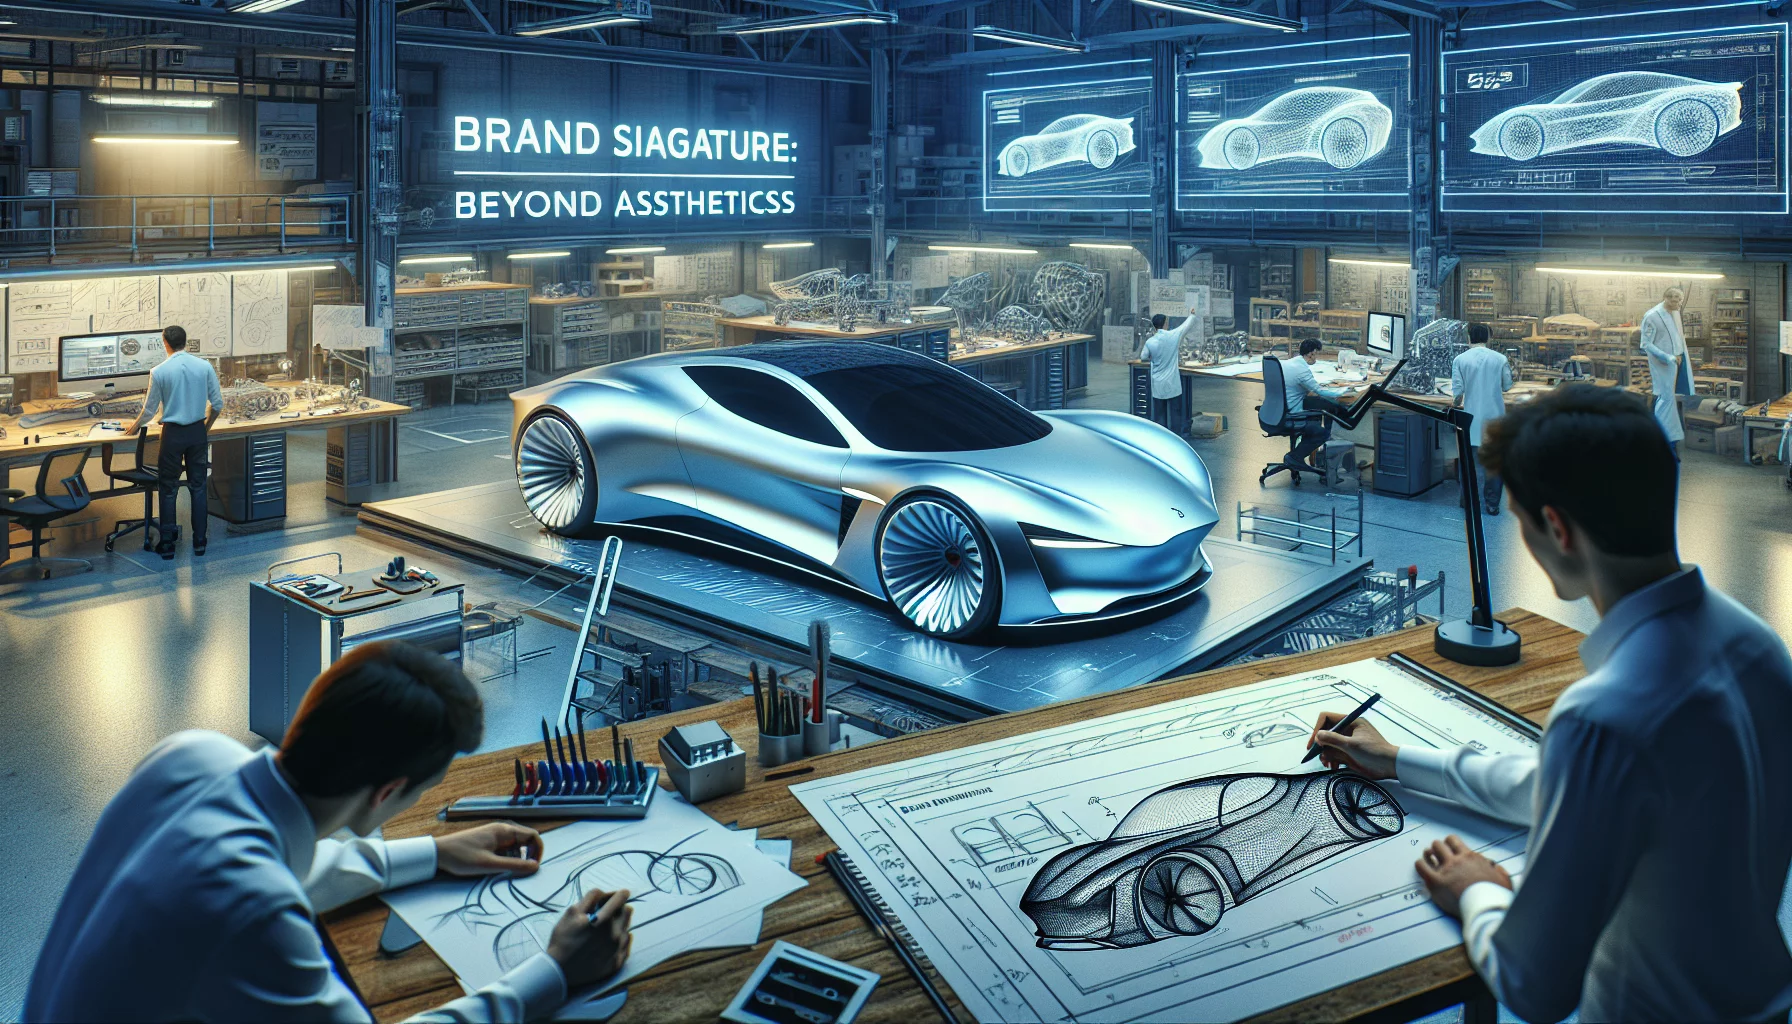 Le Design Automobile comme Signature de Marque : Au-delà de l'Esthétique